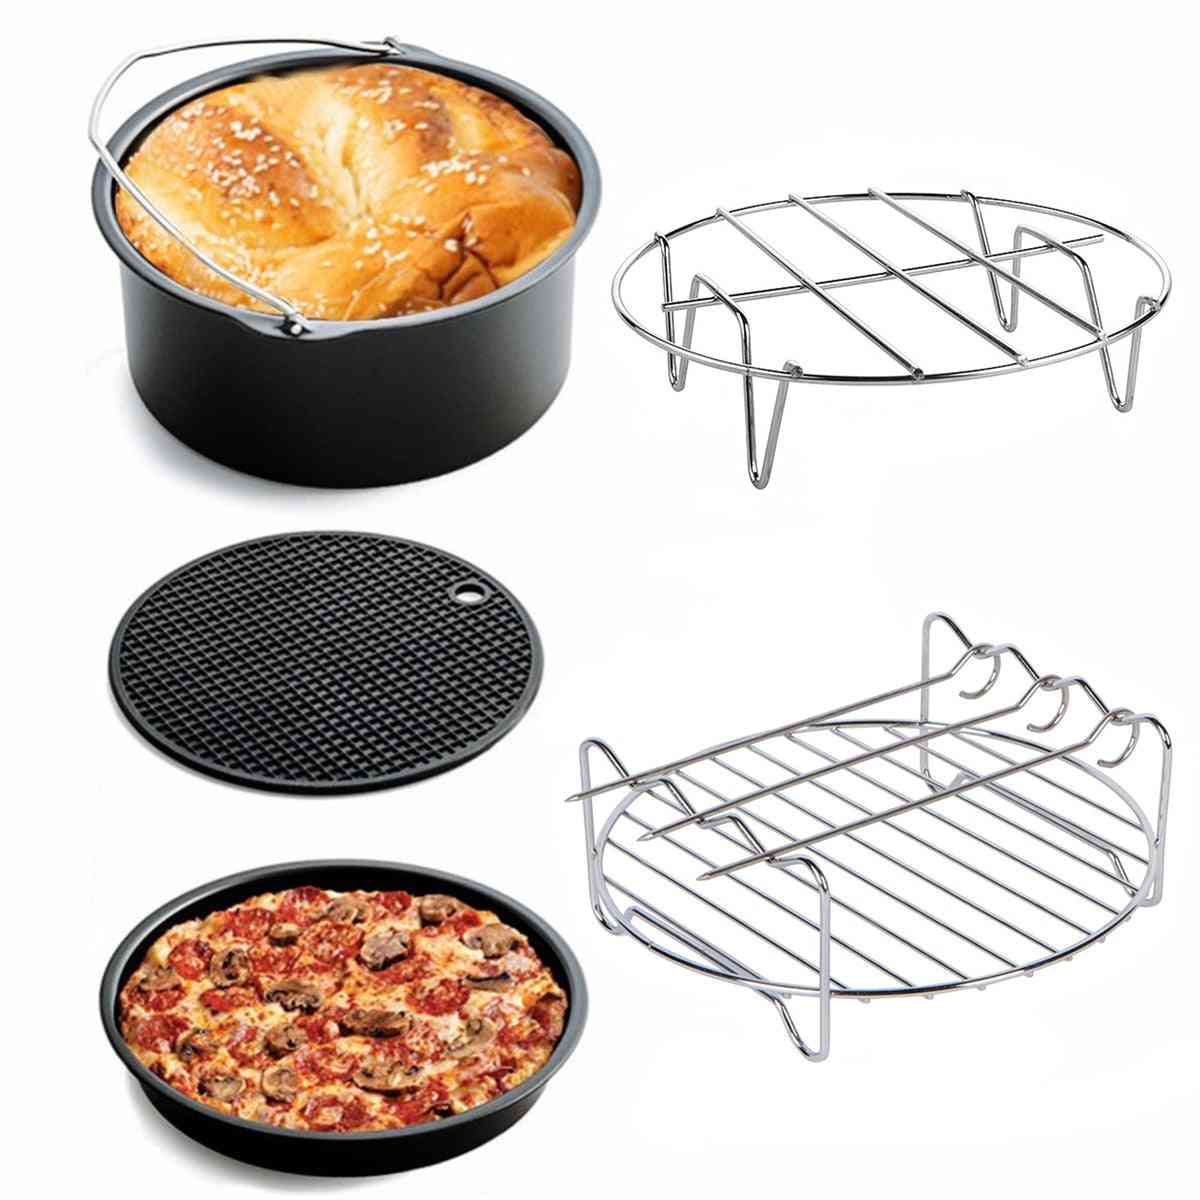 Luftfrityr tilbehør kake / pizza bur dampende ramme grill isolasjonspute